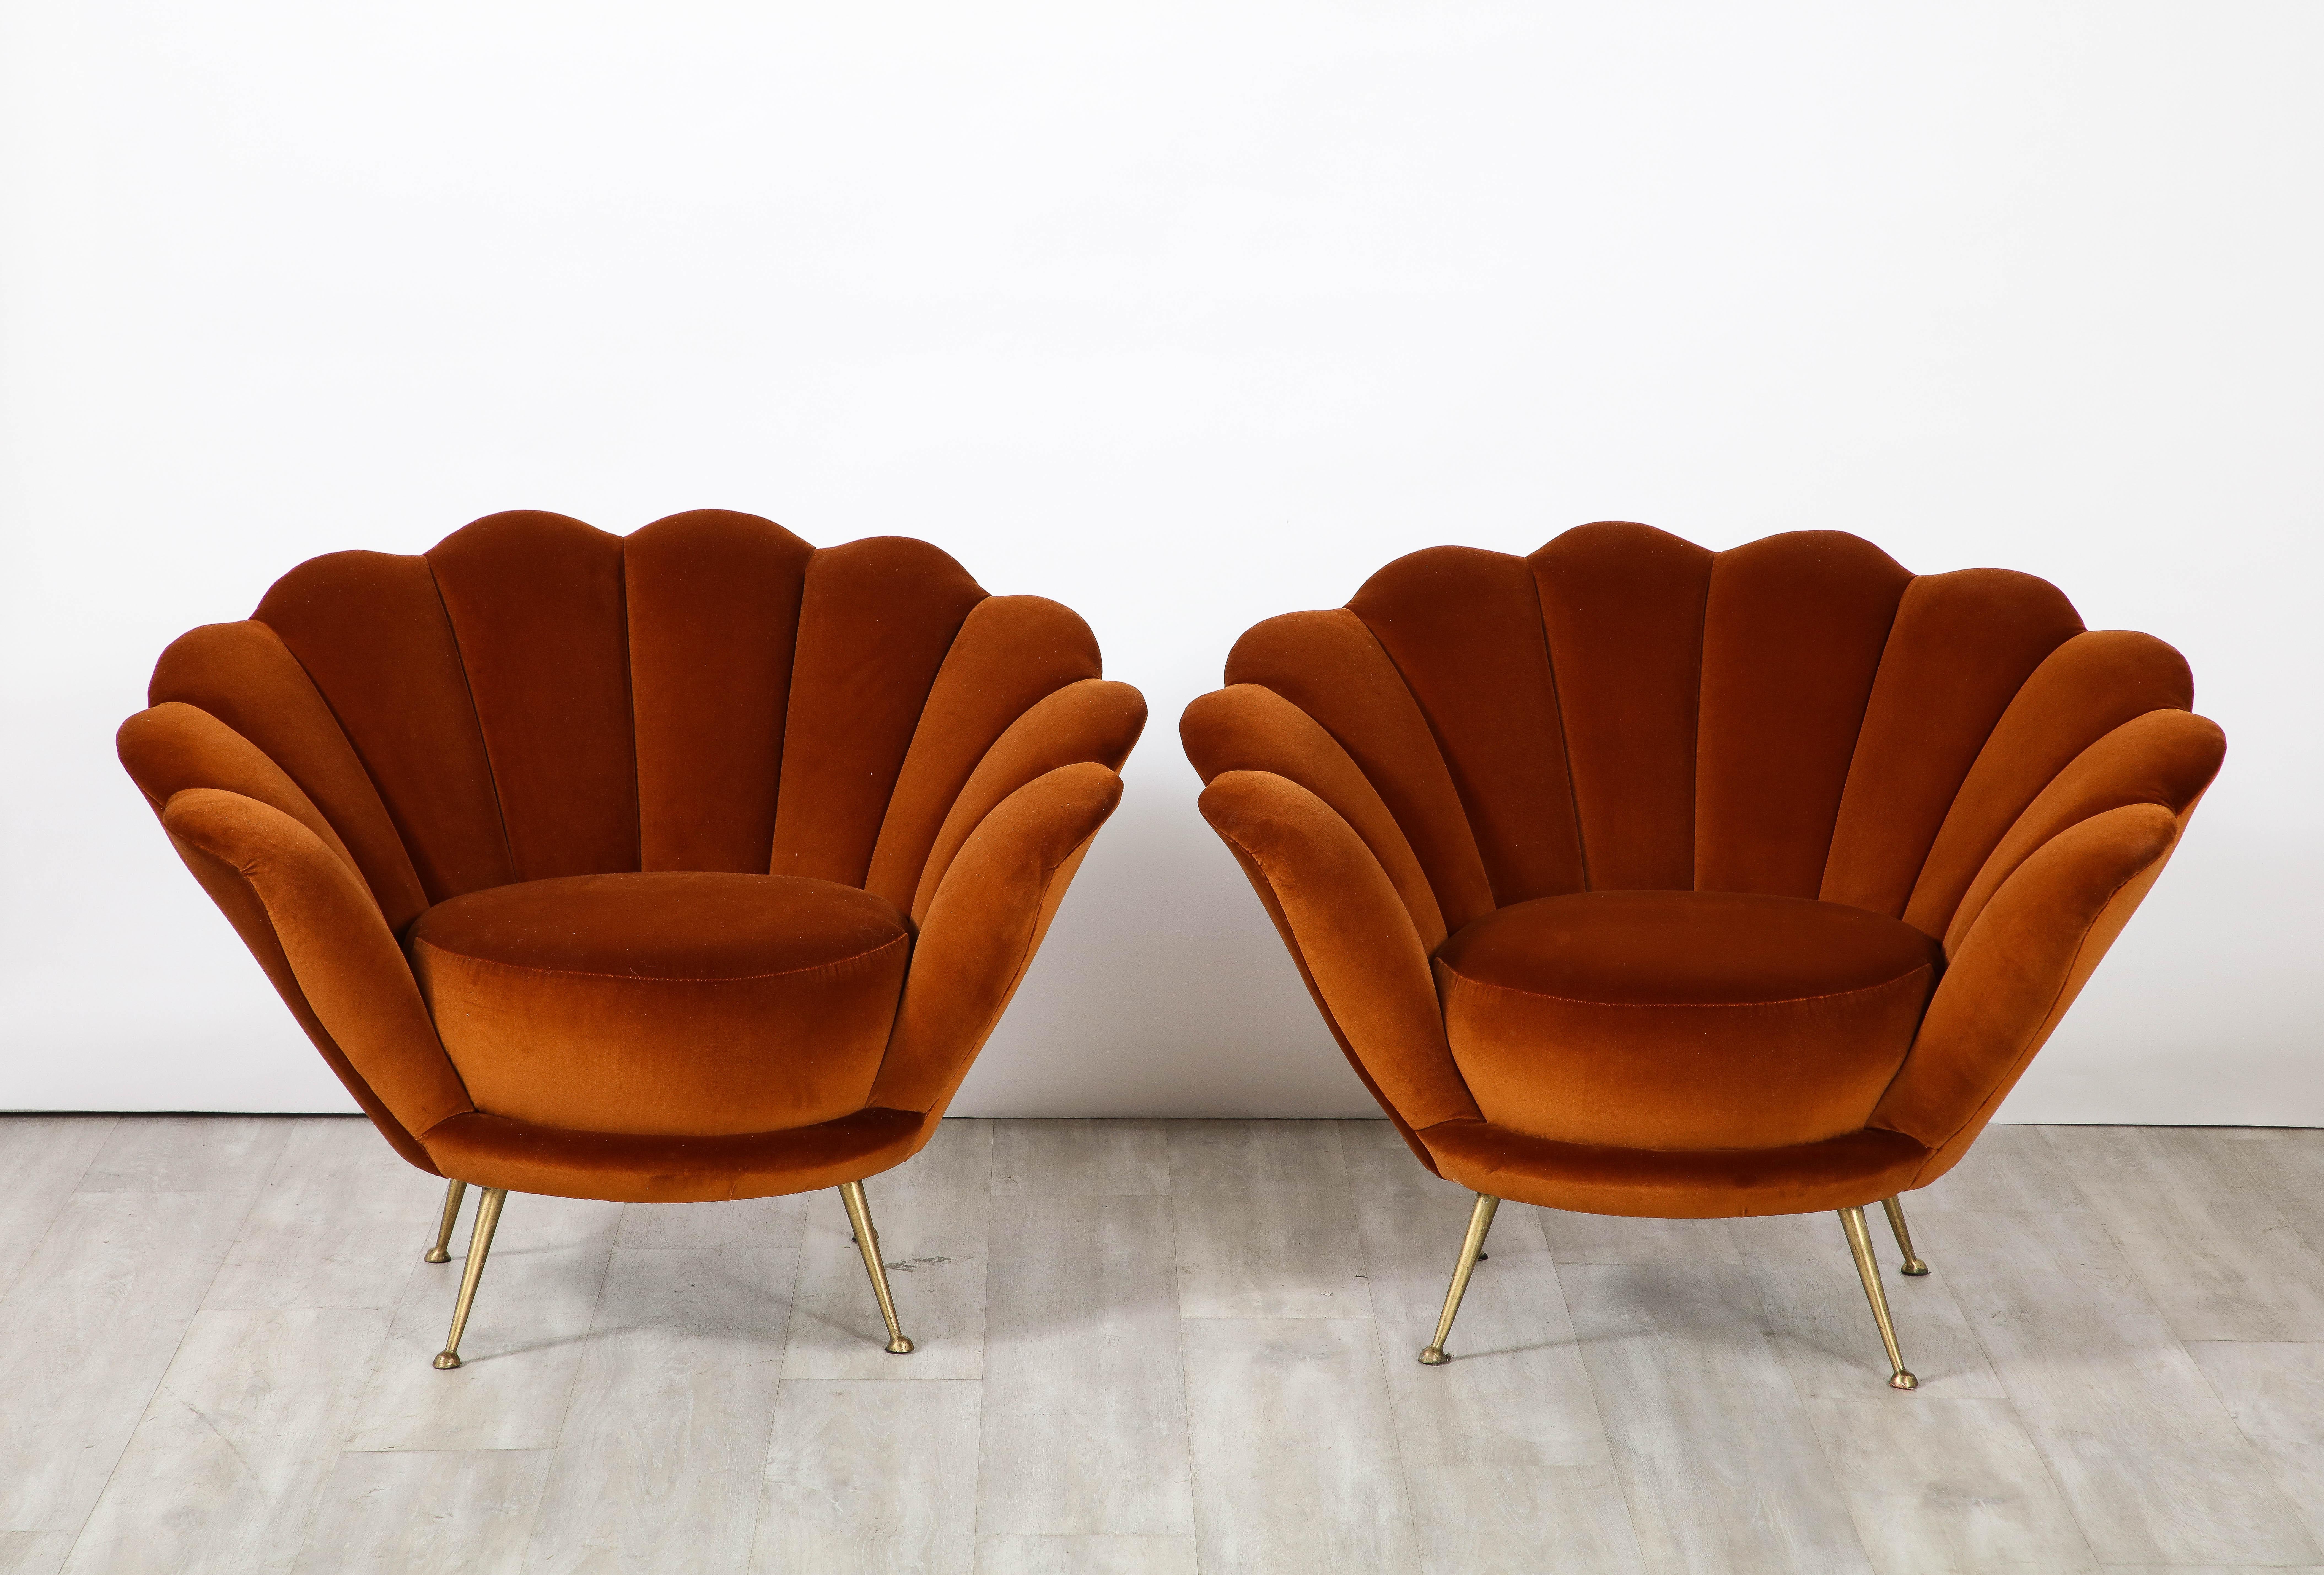 Ein dekadent gestaltetes Paar italienischer Loungesessel aus den 1950er Jahren mit einer gewellten oder blütenblattförmigen Form. Diese klassischen und exquisiten Loungesessel wurden vollständig restauriert und neu mit einem luxuriösen und